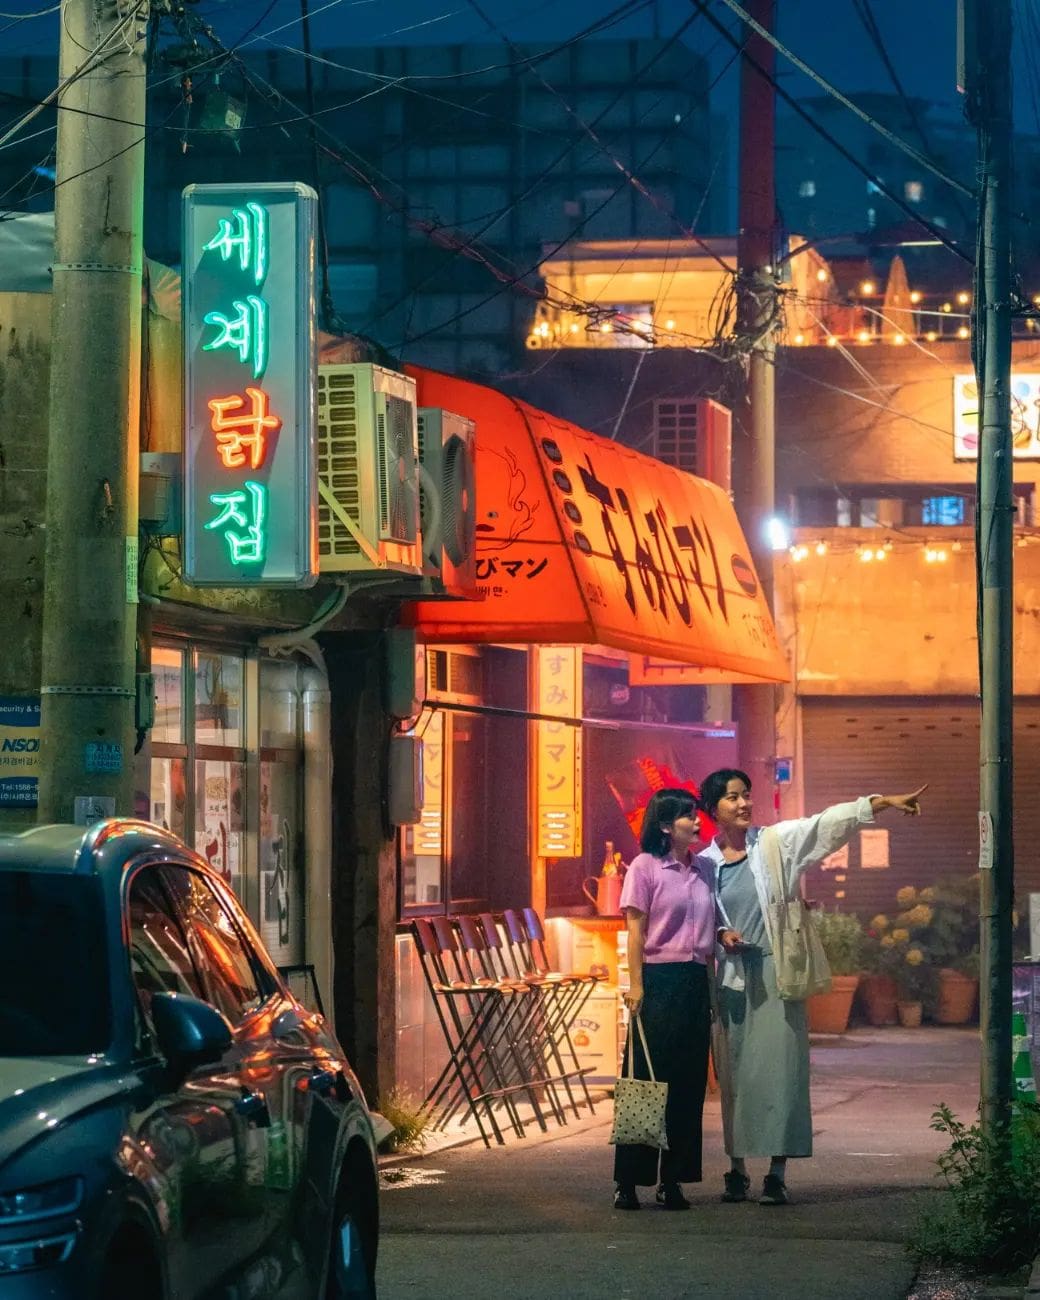 Luna de miel en Seúl: Dos mujeres caminando por una calle iluminada con letreros luminosos